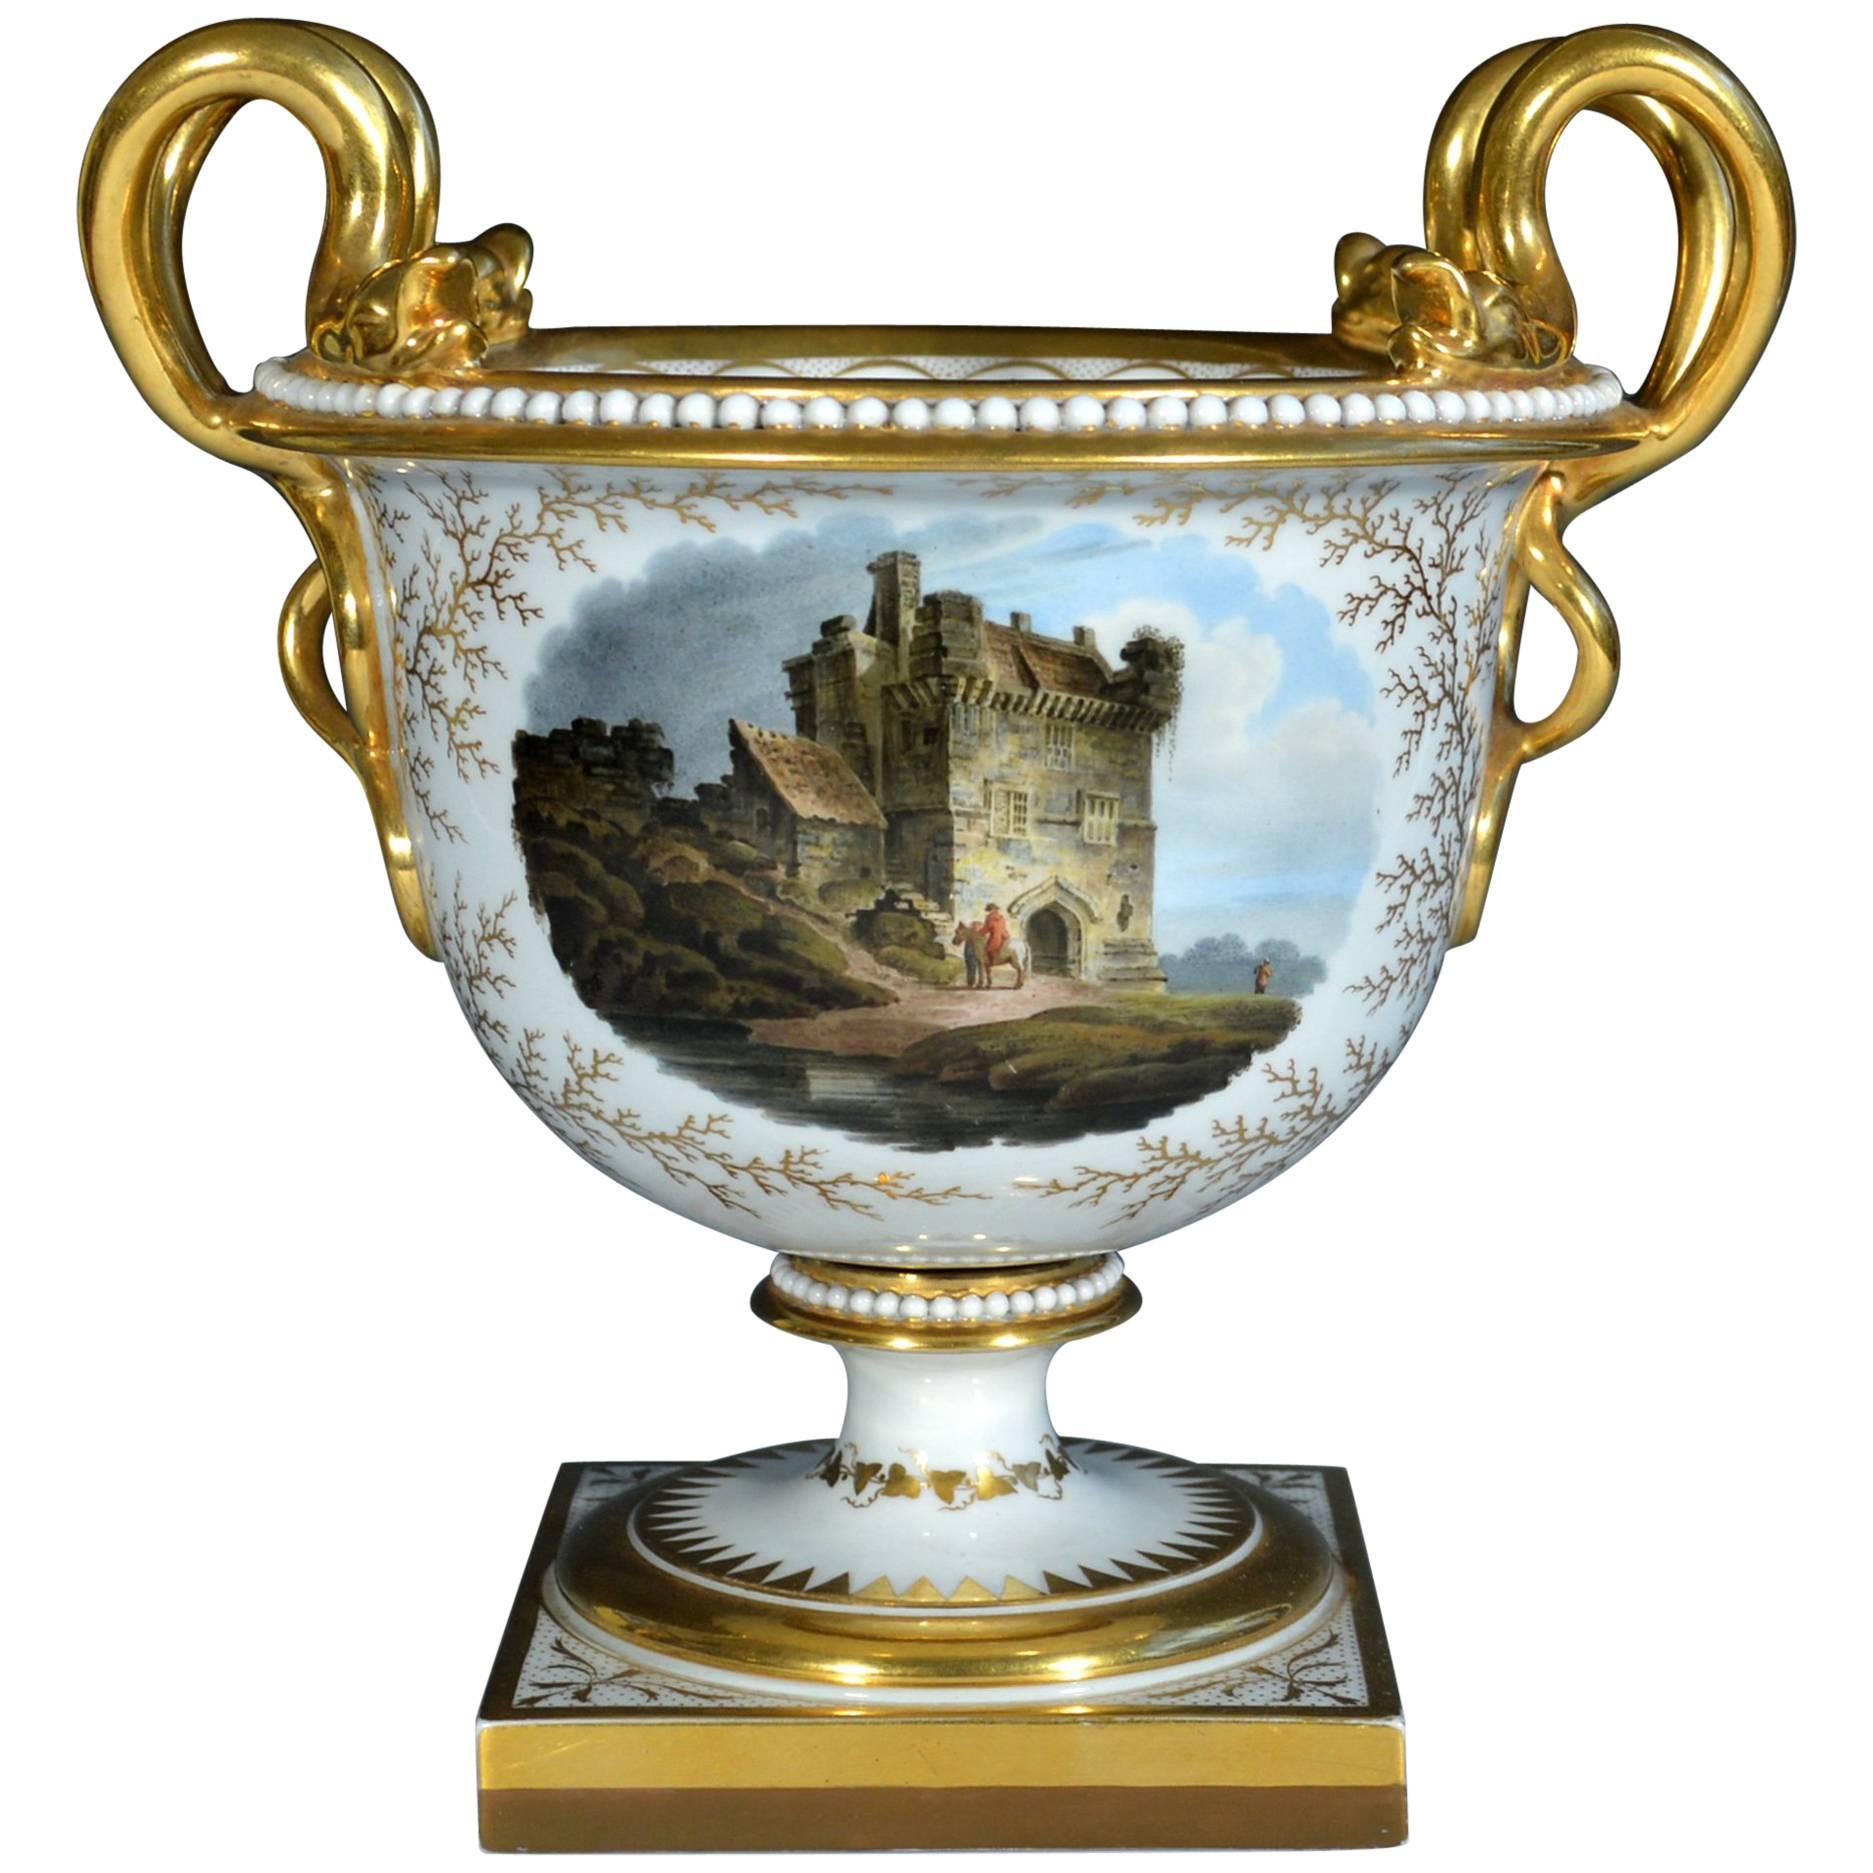 Regency Flight, Barr and Barr Porcelain Urn with Morpeth Castle, Northumberland